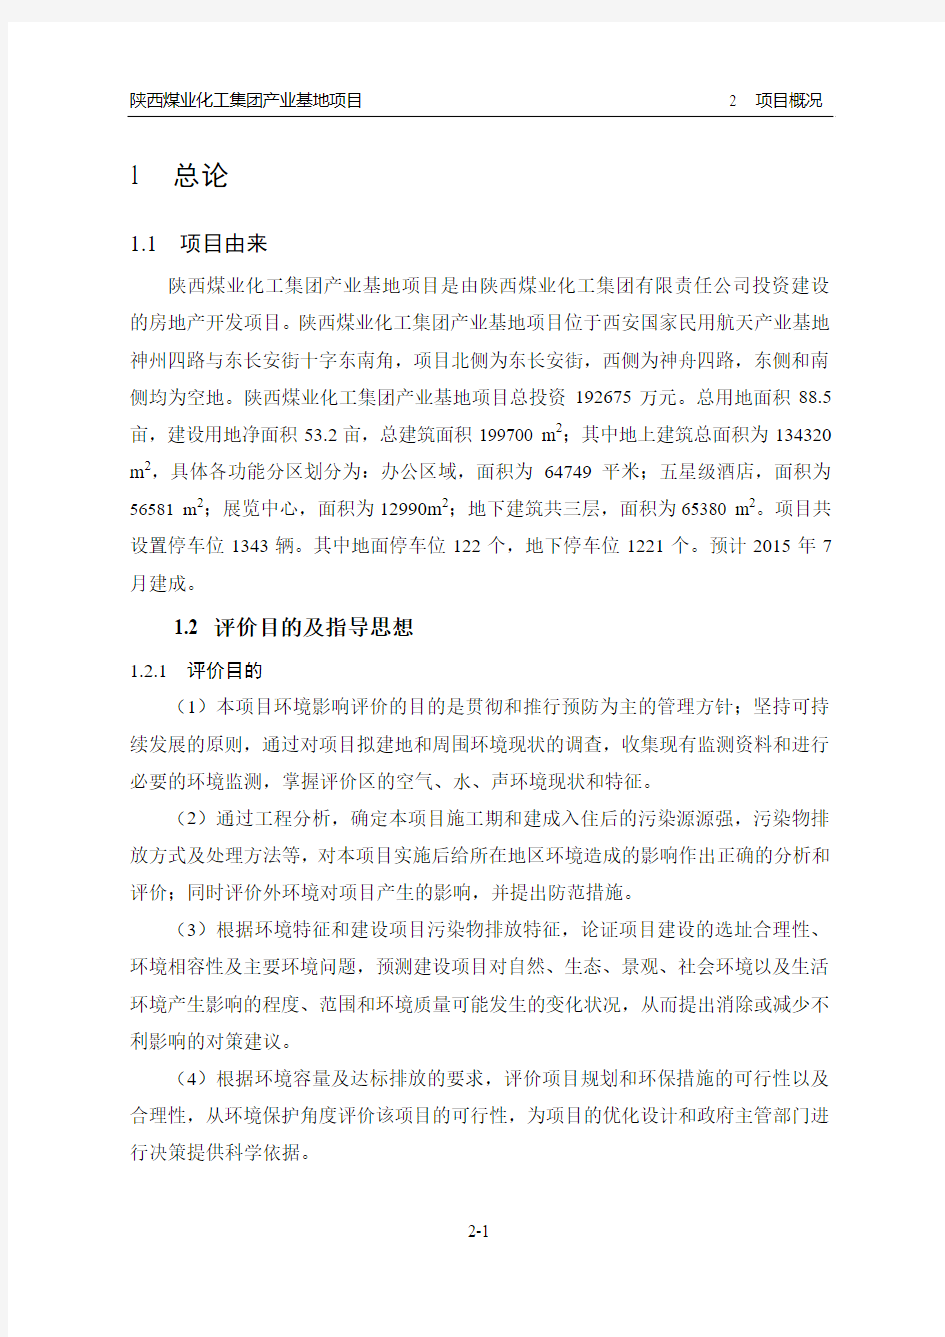 陕西煤业化工集团产业基地项目环境影响评价报告书